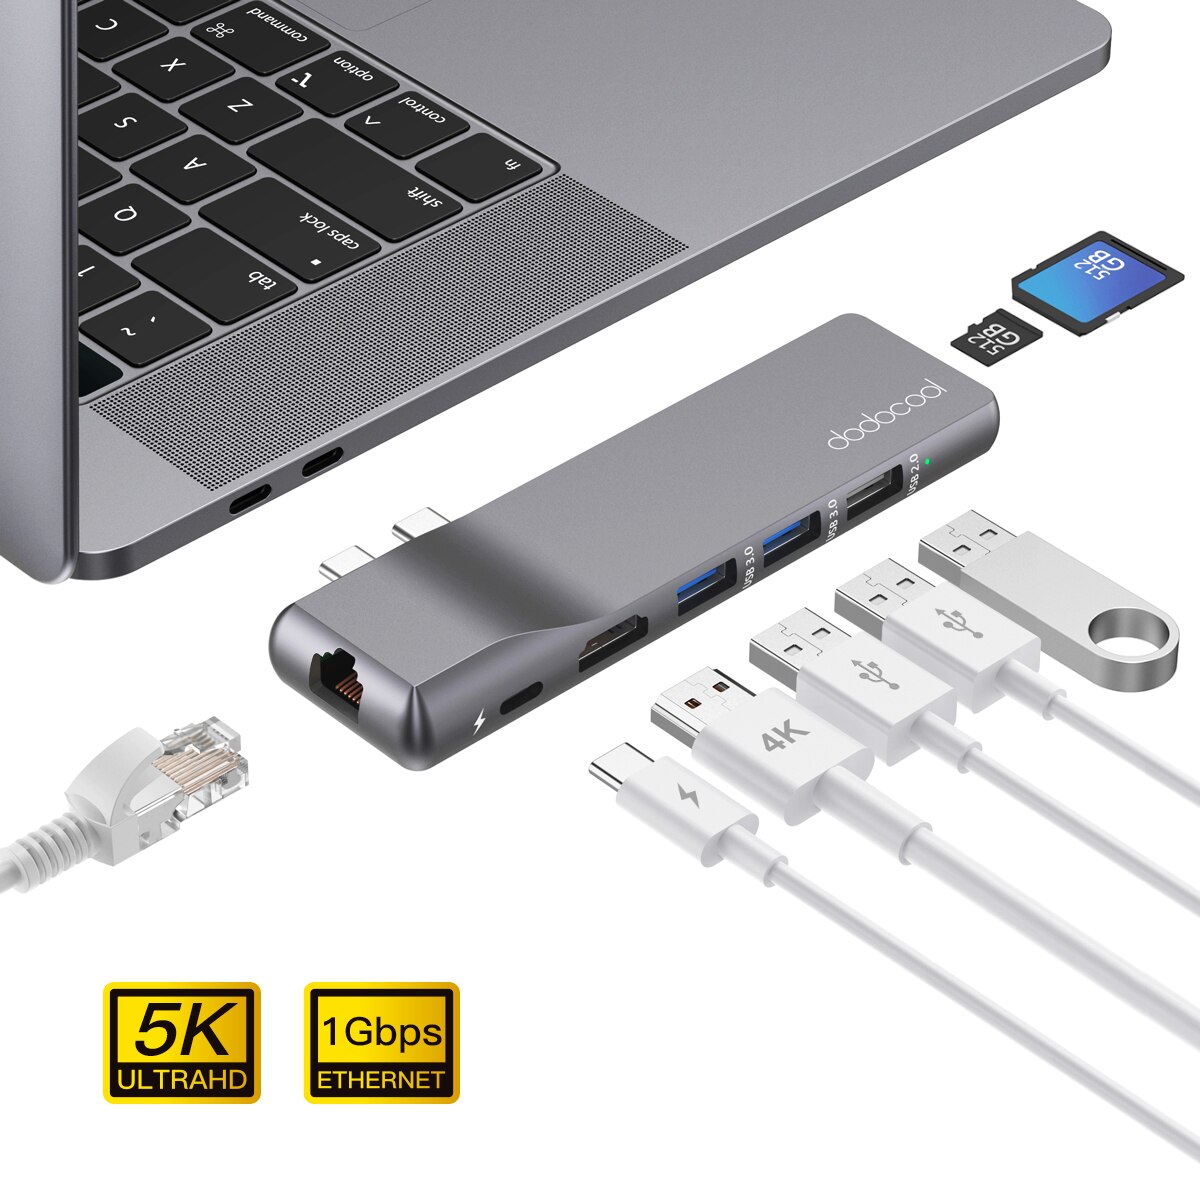 Dodocool Usb C Hub Voor Macbook Pro Adapter Met 1Gbps RJ45 Gigabit Ethernet 4K Hd 3 Usb 2.0 3.0 Poorten 512Gb Sd/Tf Card Reader